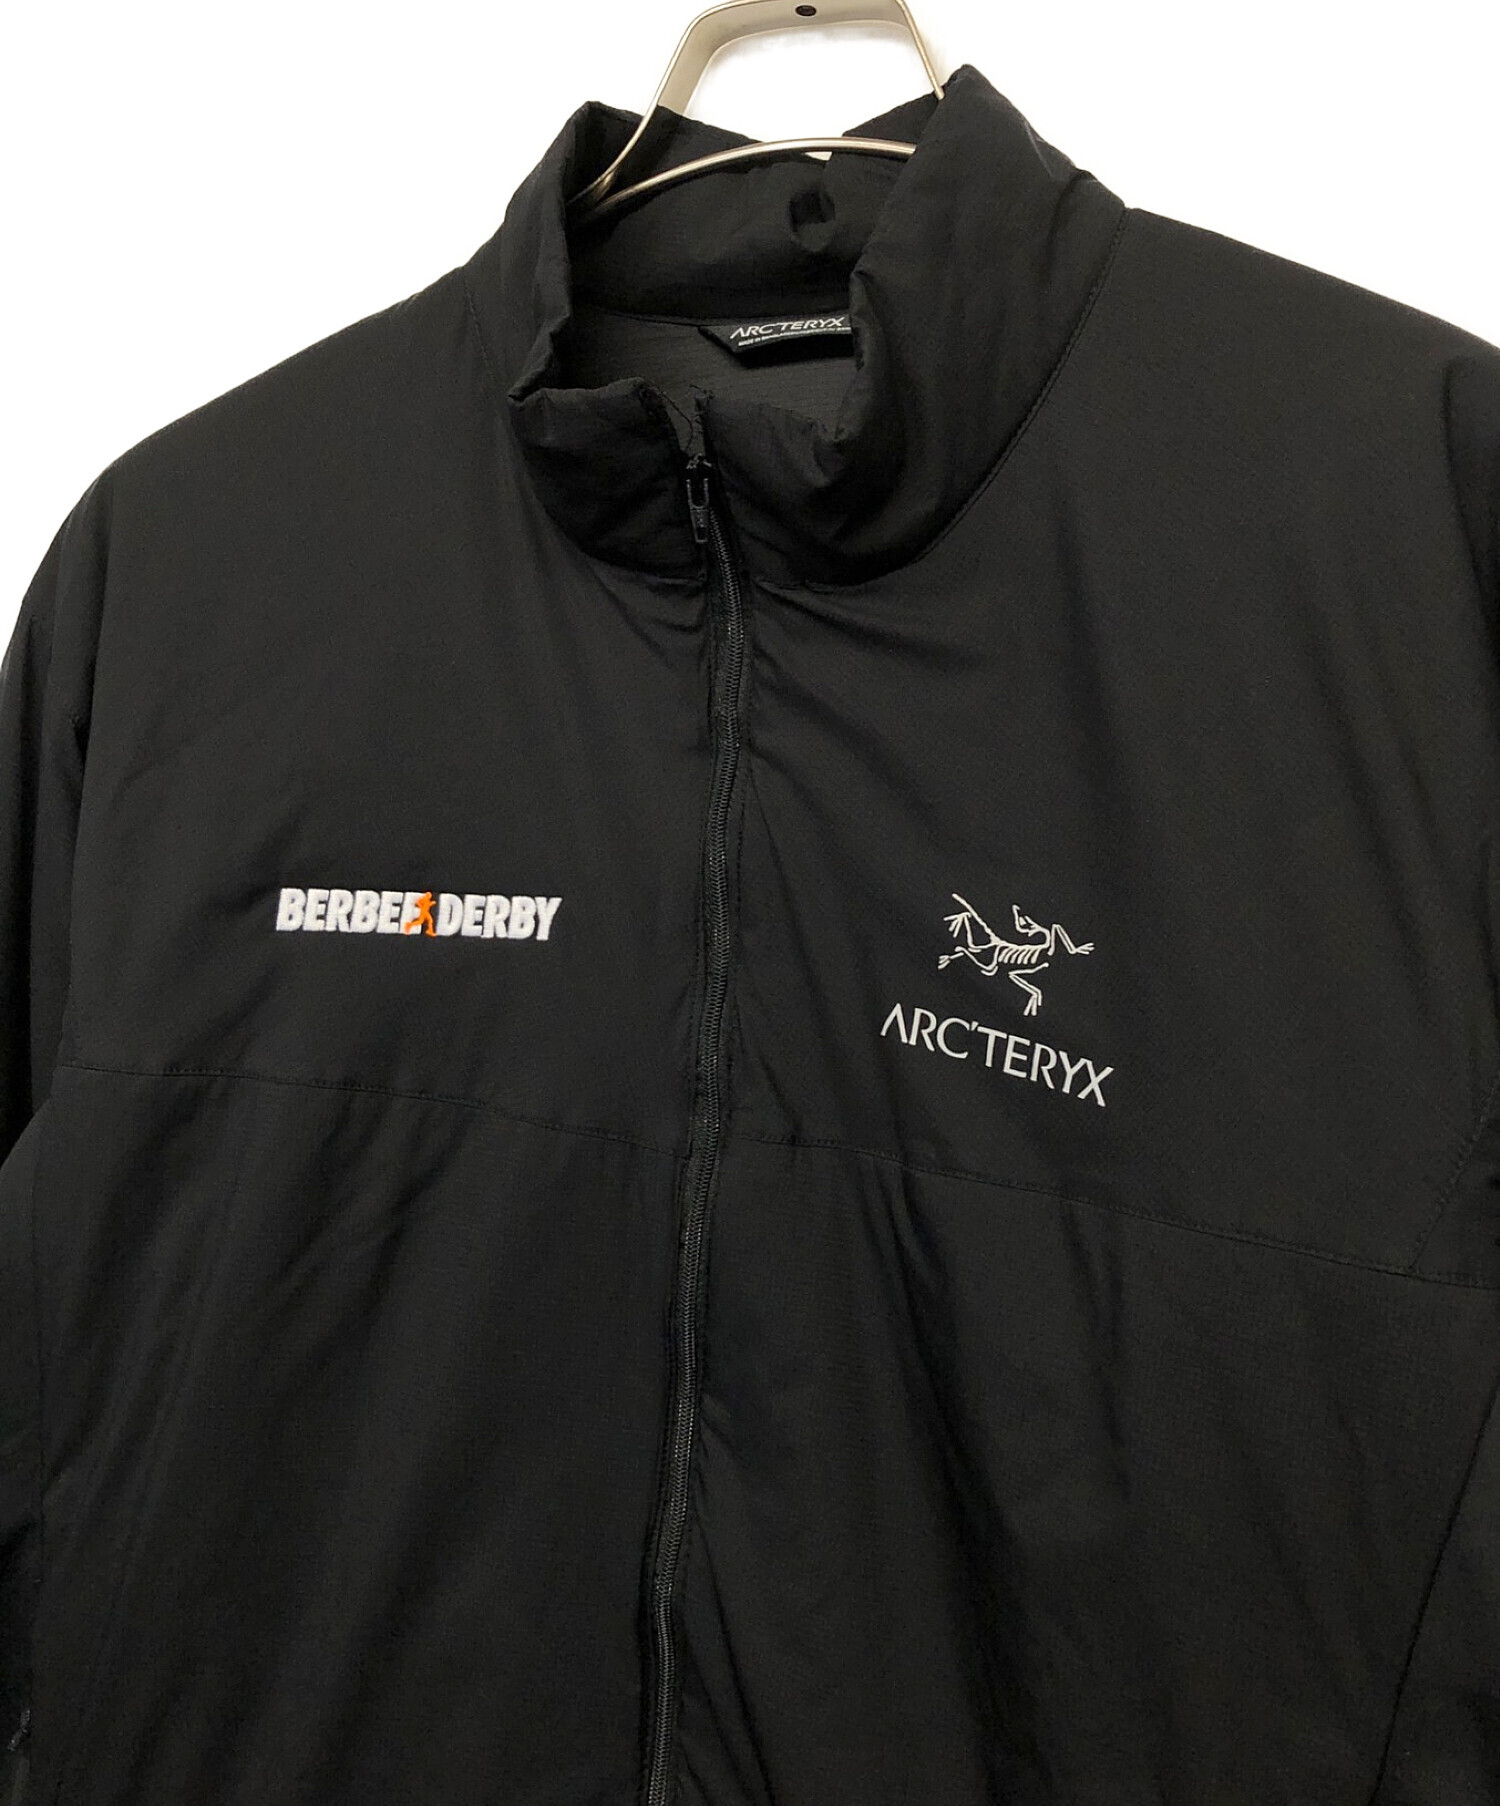 ARC'TERYX (アークテリクス) ナイロンジャケット ブラック サイズ:L